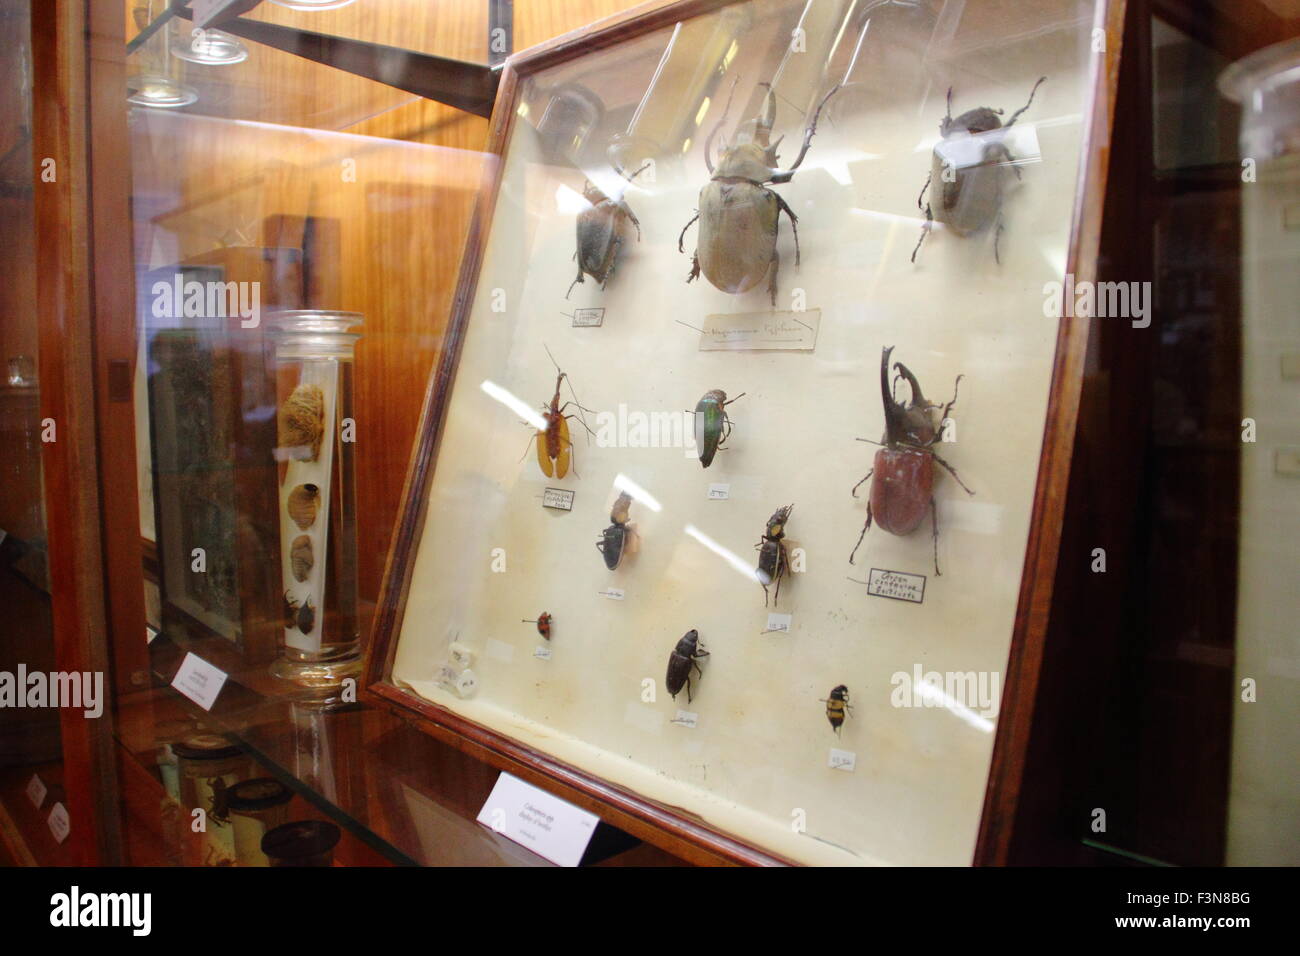 Insectes montés sur l'affichage dans un cabinet de verre à l'Alfred Denny Zoological Museum de l'Université de Sheffield, en Angleterre, Royaume-Uni Banque D'Images